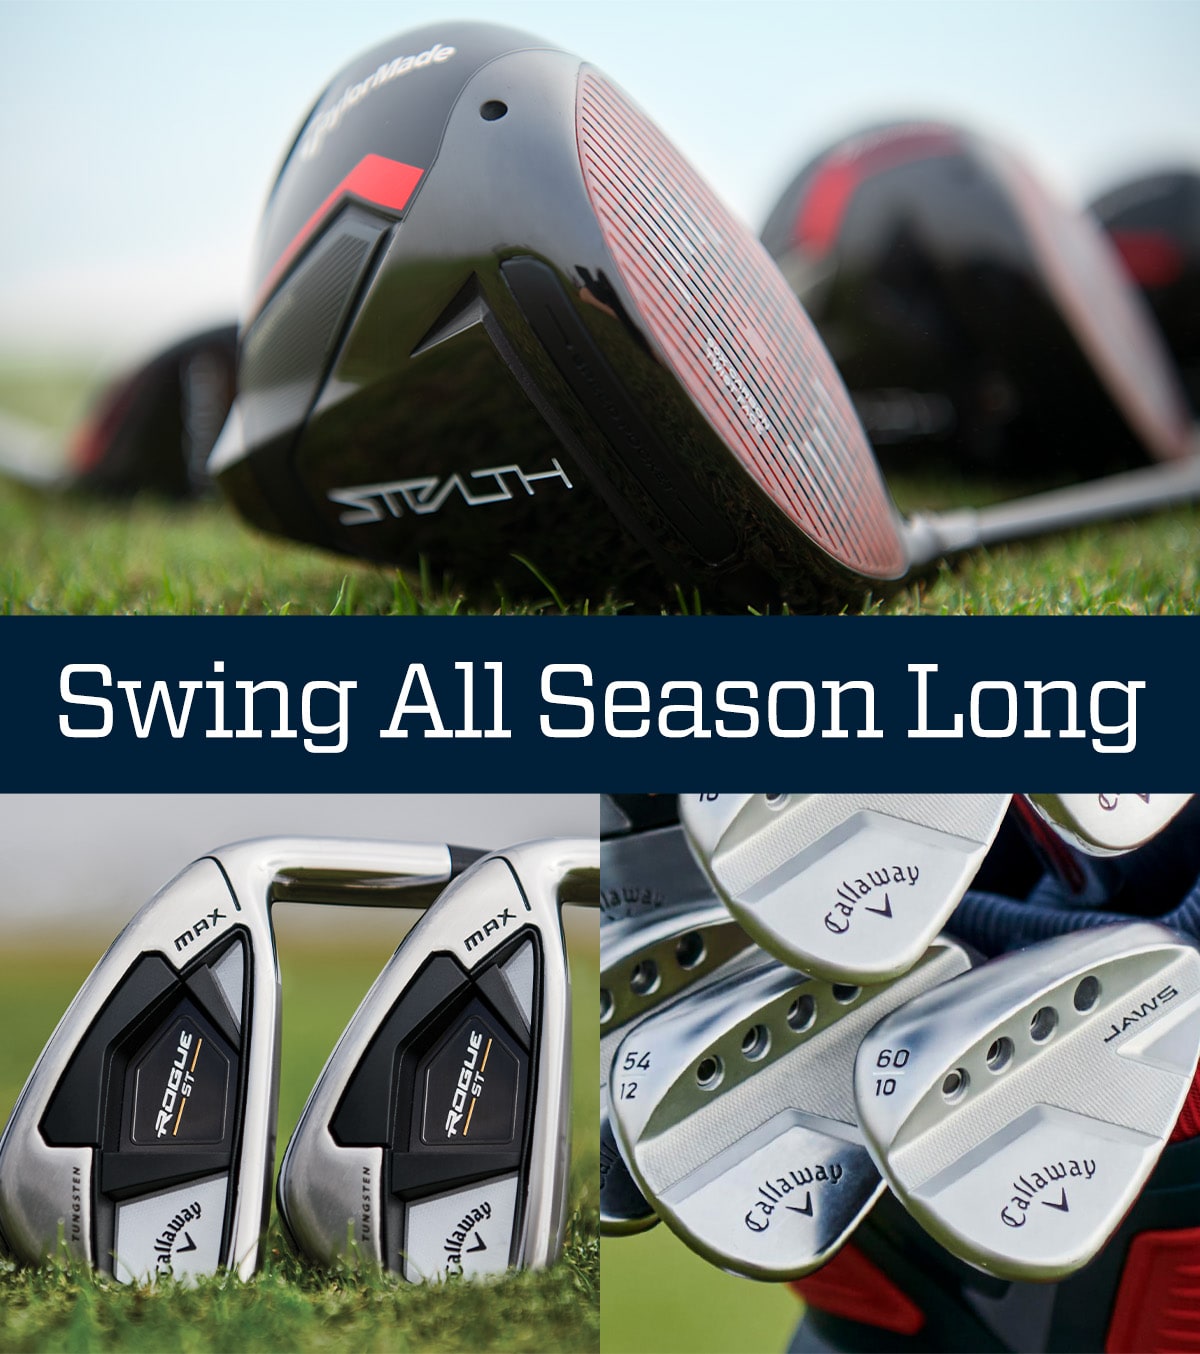  Swing all season long.